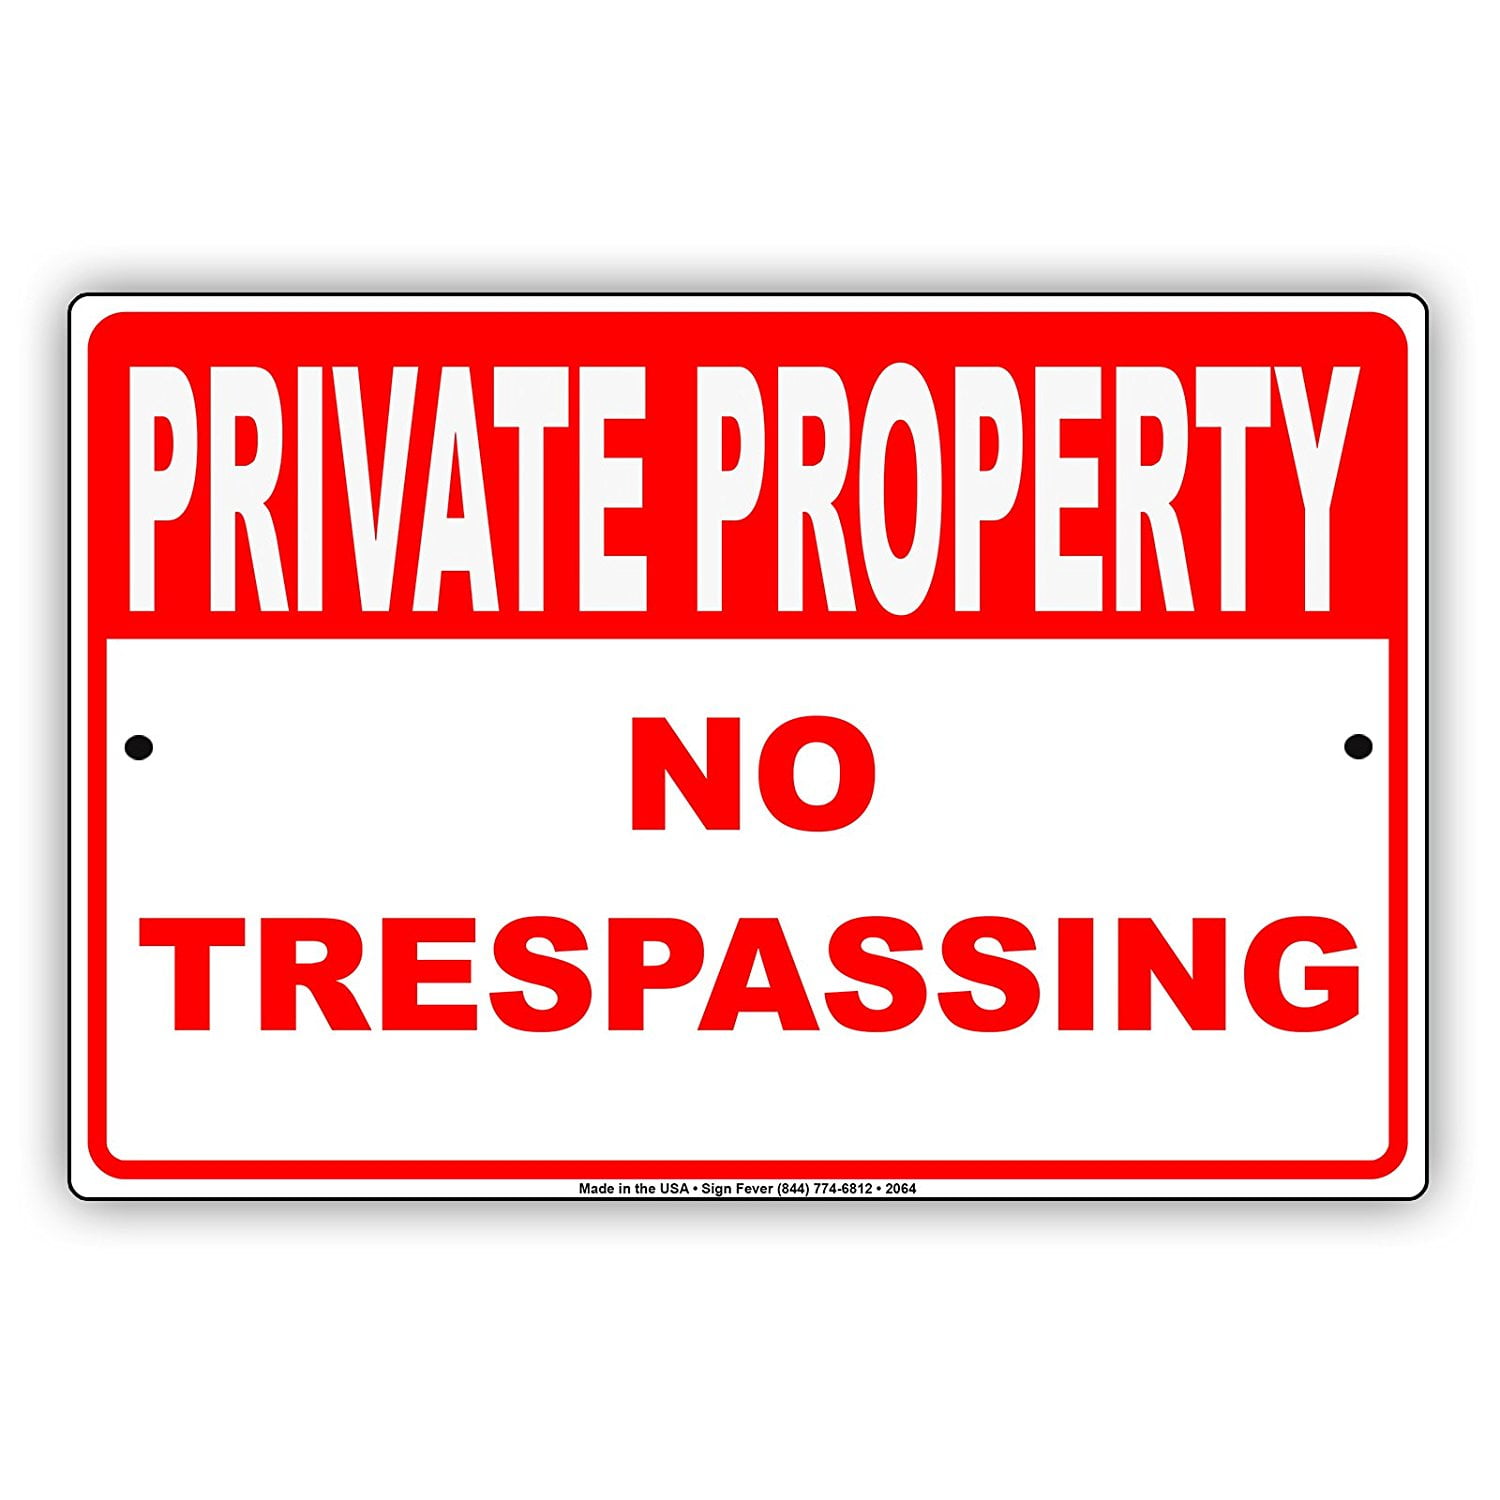 No Trespassing. No Trespassing sign. No Trespassing перевод. Печать allowed.